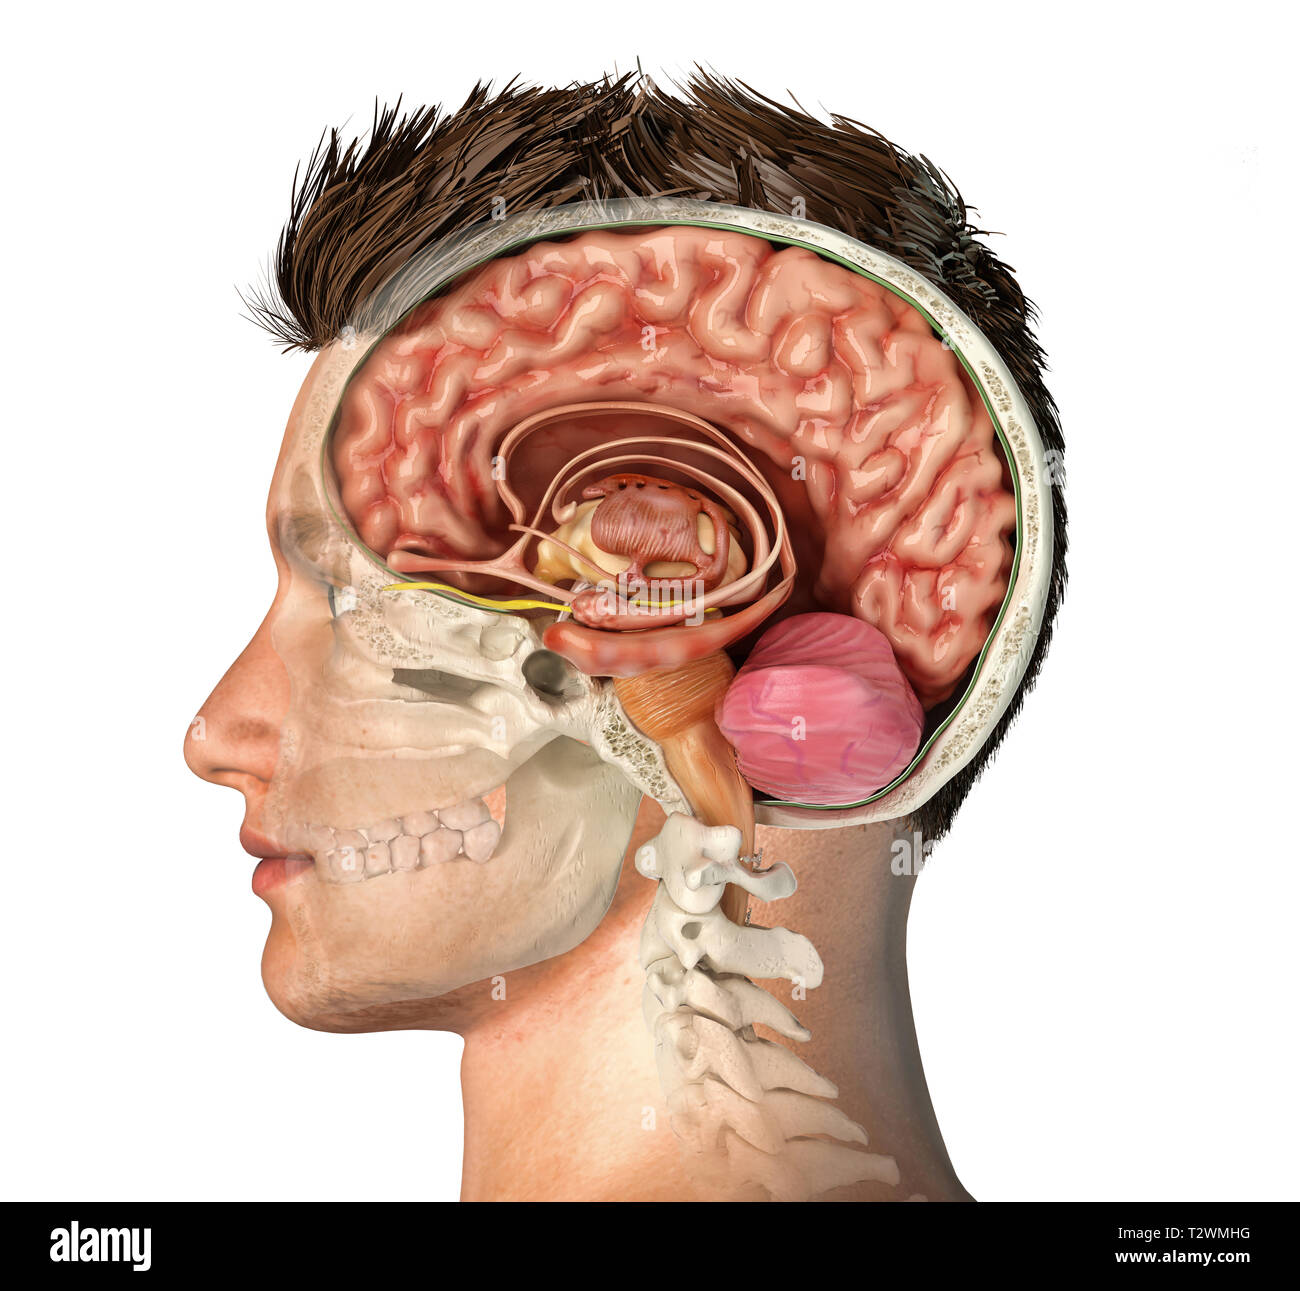 Mann Kopf mit dem Schädel Querschnitt mit Gehirn. Seitliche Sicht auf weißem Hintergrund. Stockfoto